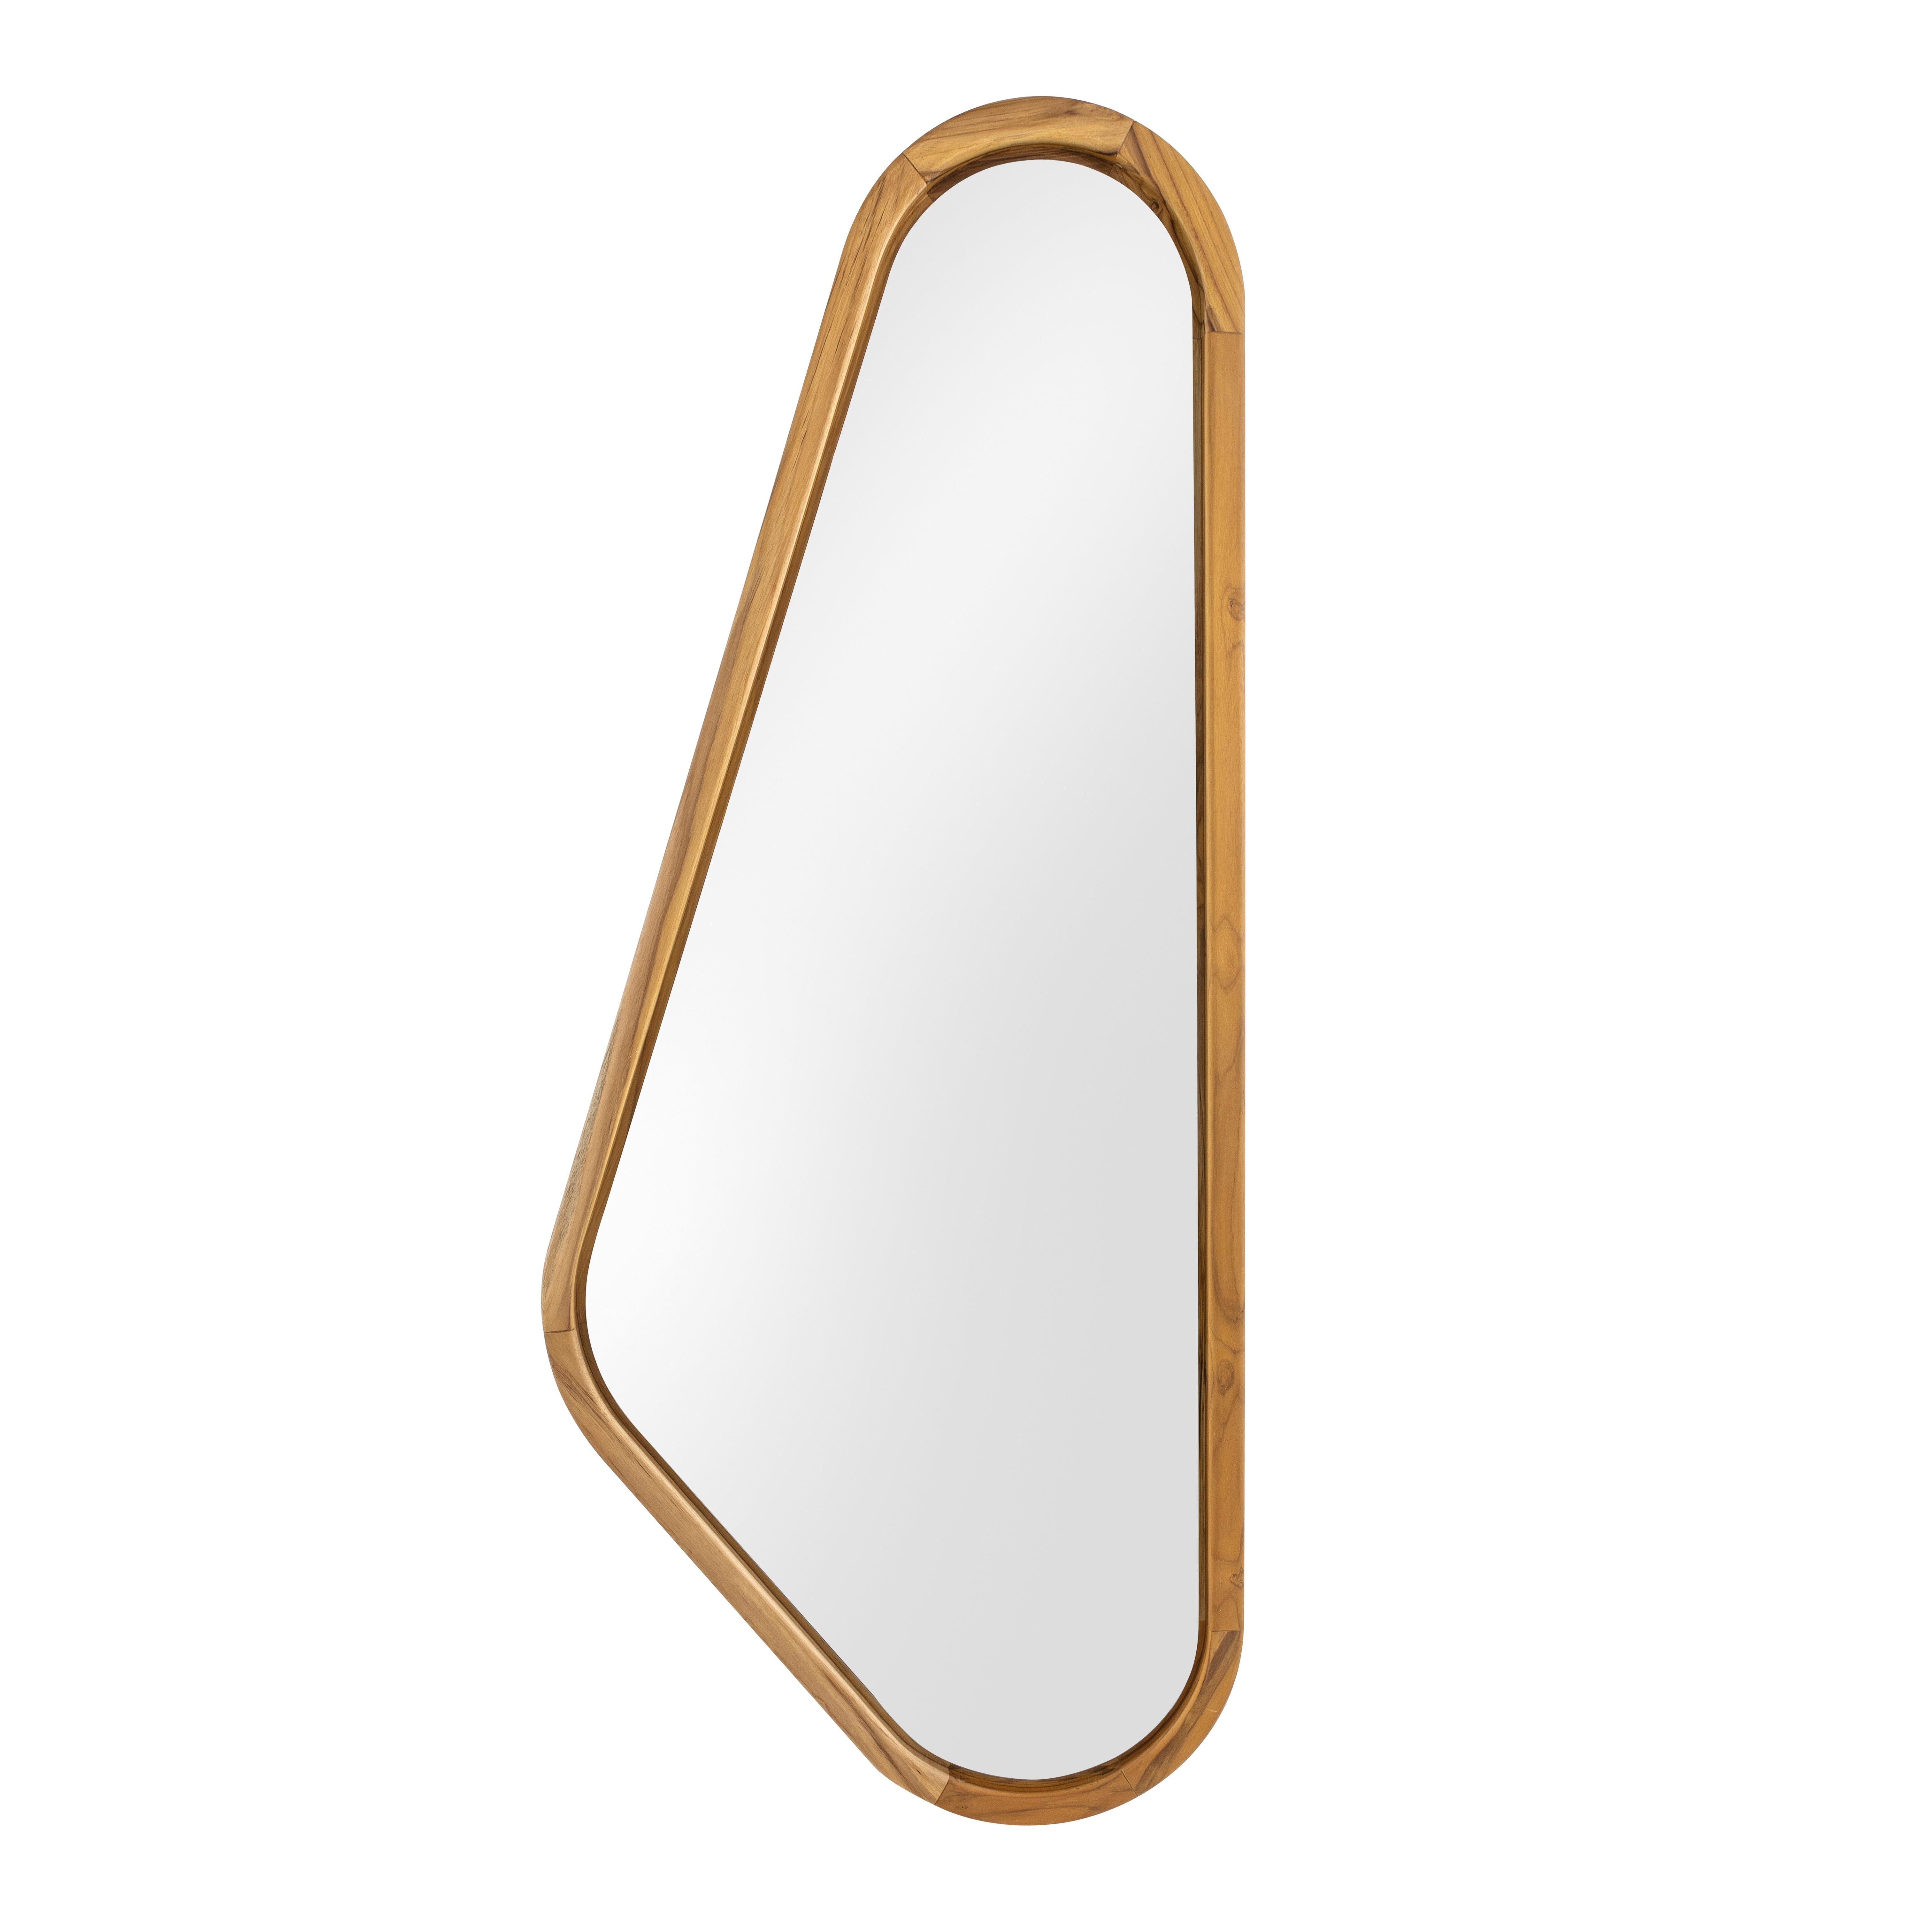 Avec un design léger et raffiné, le miroir Design/One incorpore une touche naturelle dans n'importe quelle zone de la maison. Ali, qui signifie 